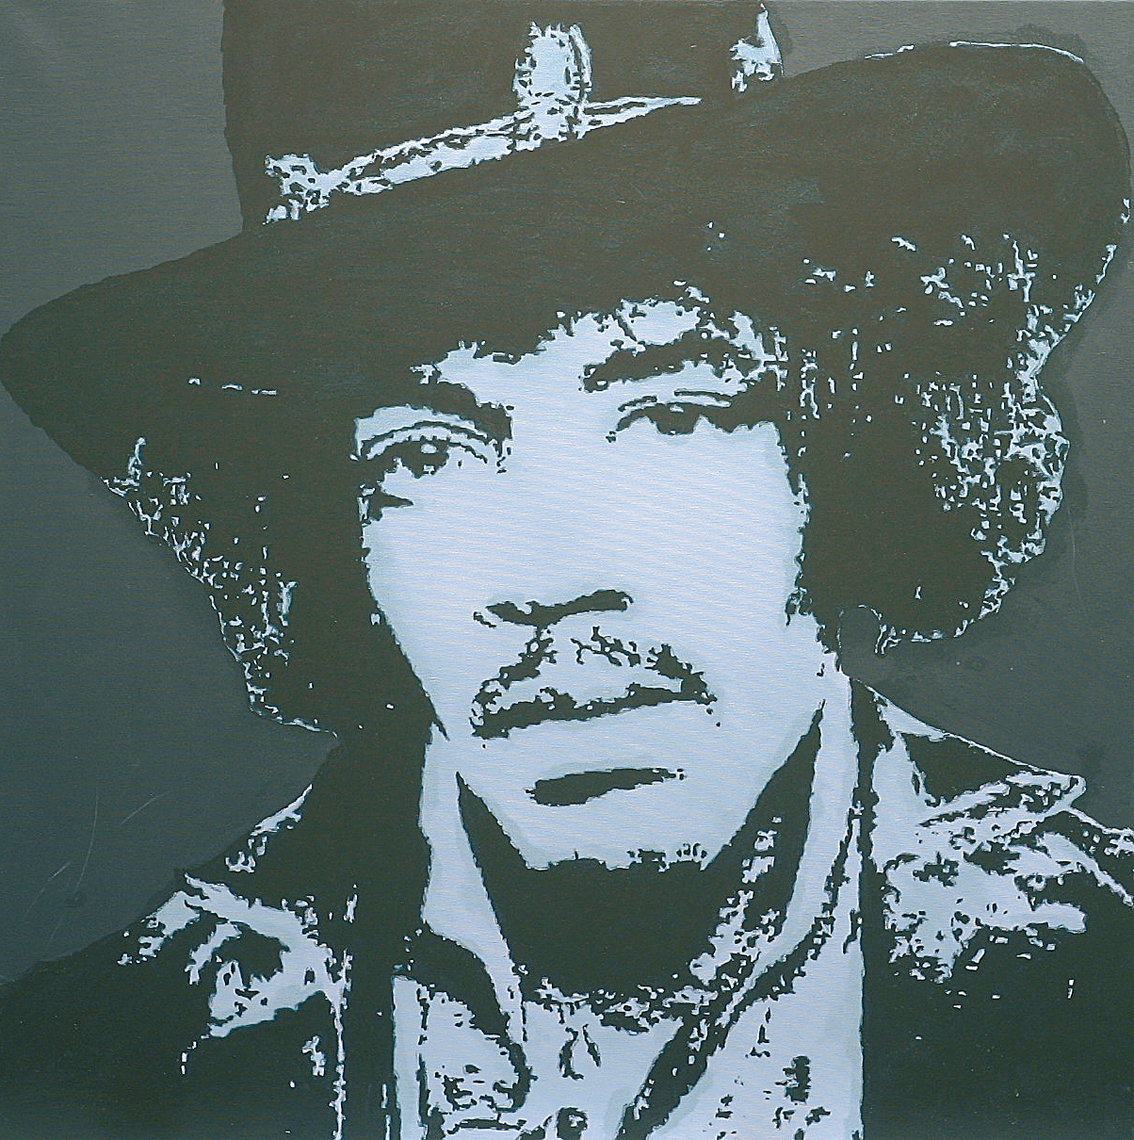 "Jimi Hendrix"